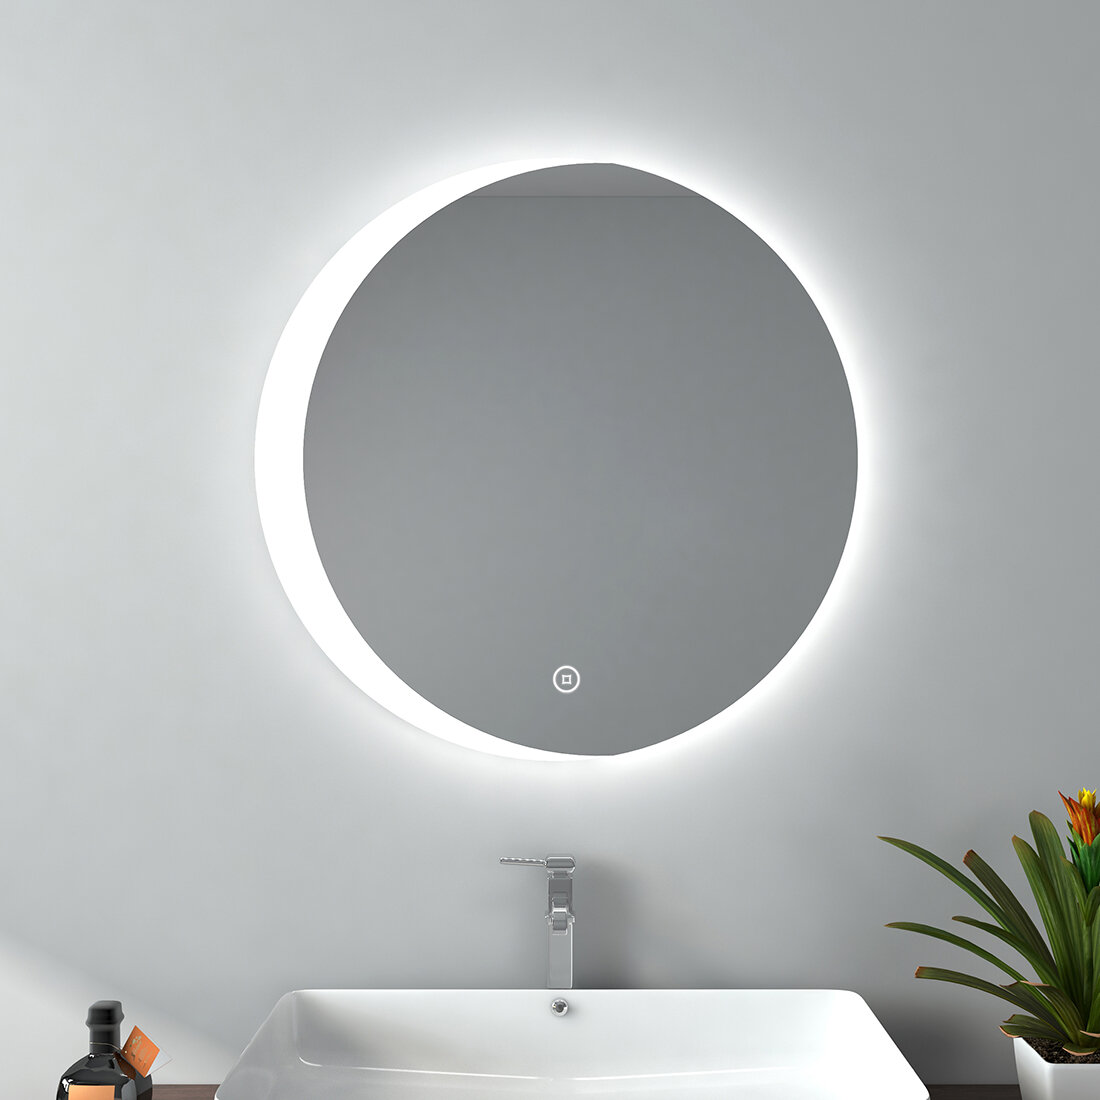 EMKE Runder Badezimmerspiegel mit Beleuchtung, 3 cm Durchmesser